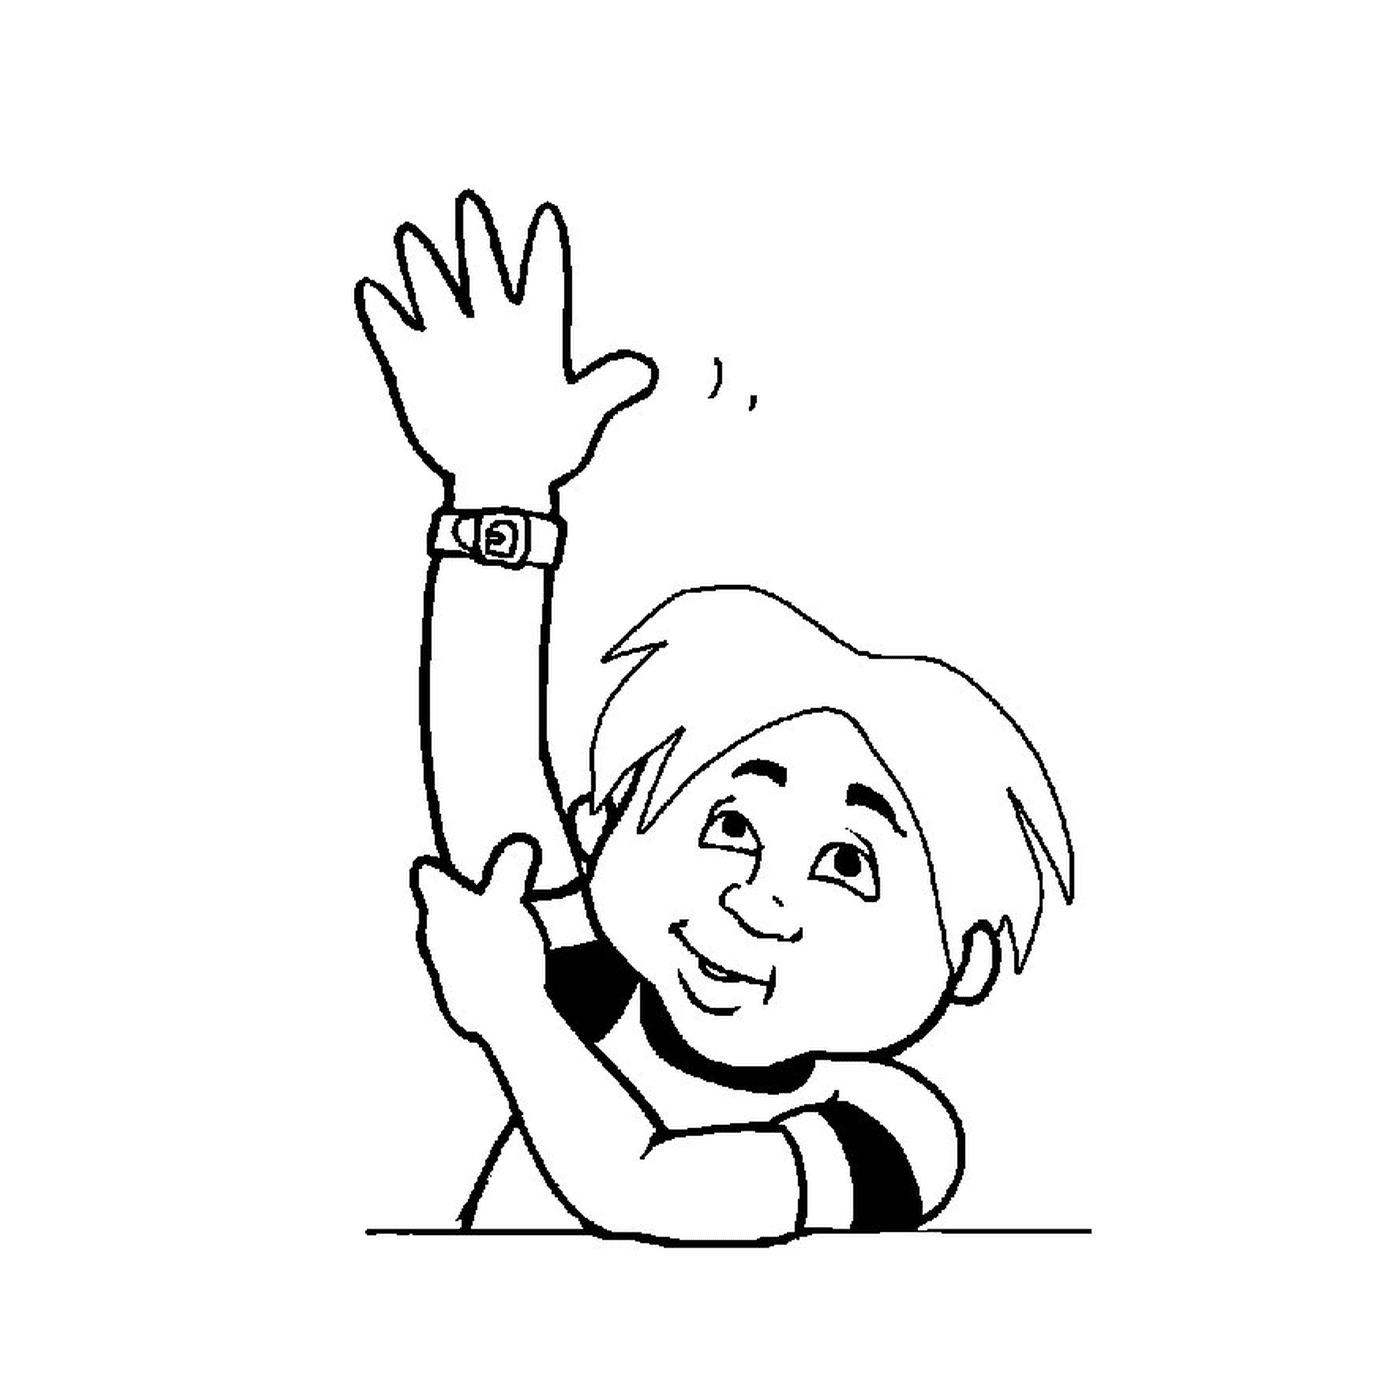  child raising joyful hand 